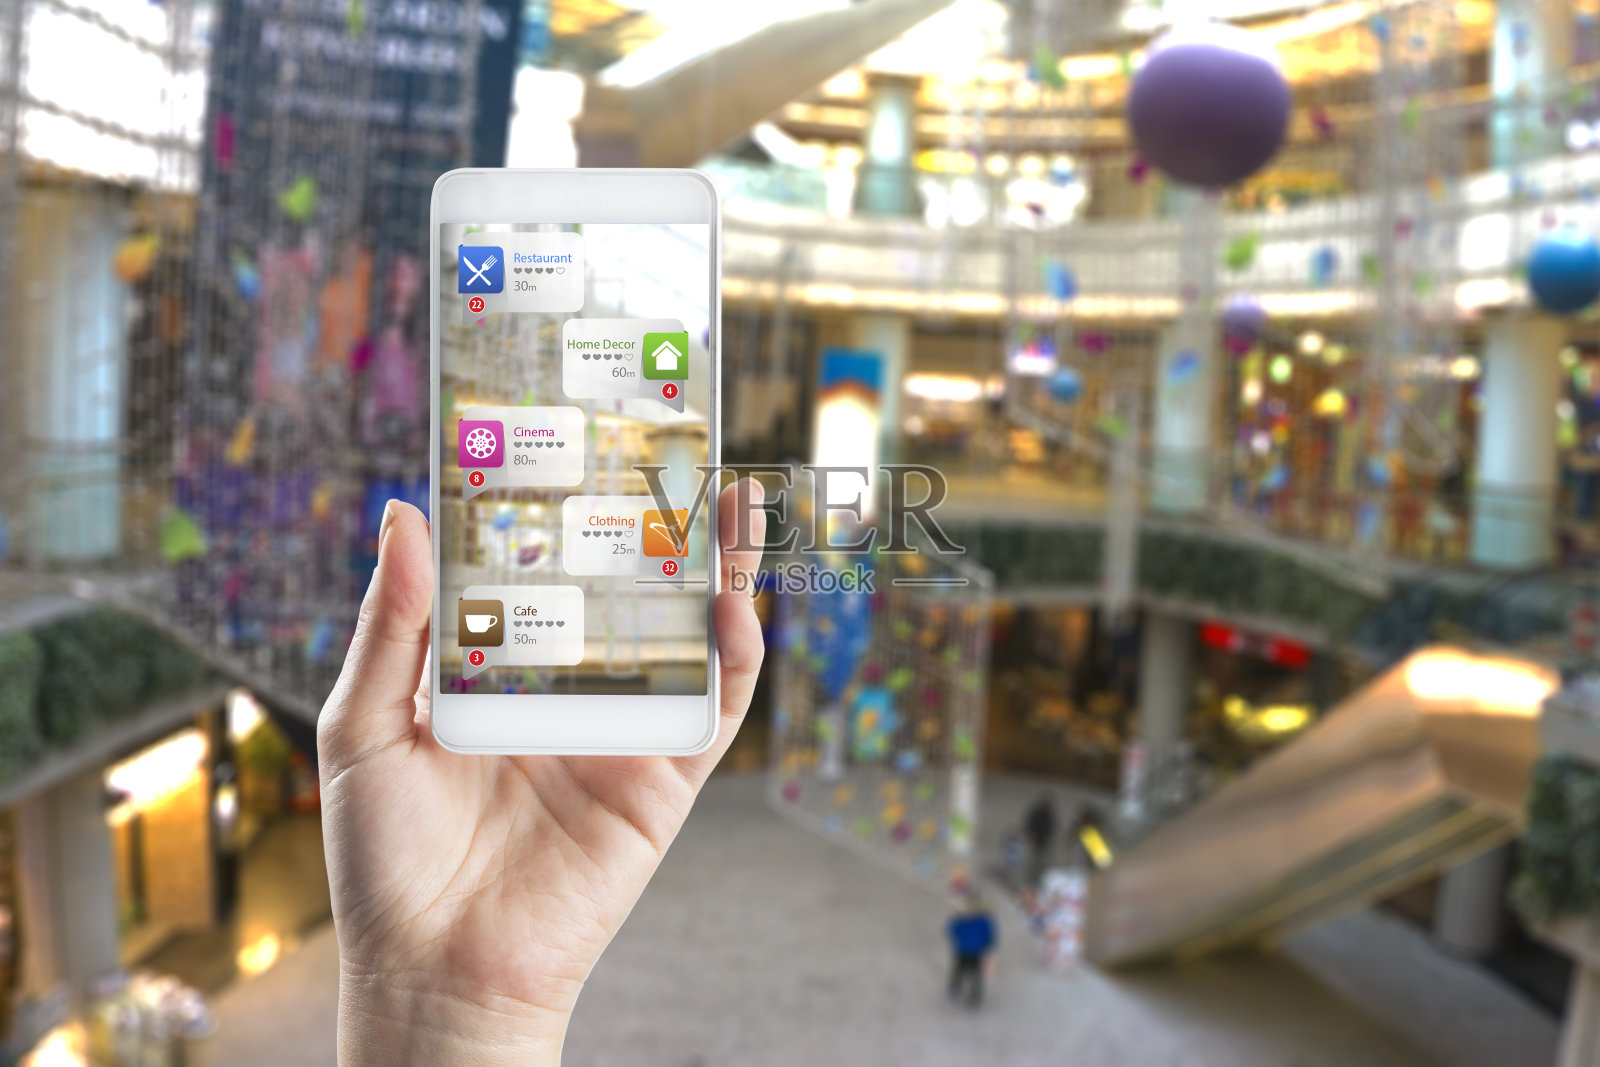 增强现实技术在商场中的应用照片摄影图片